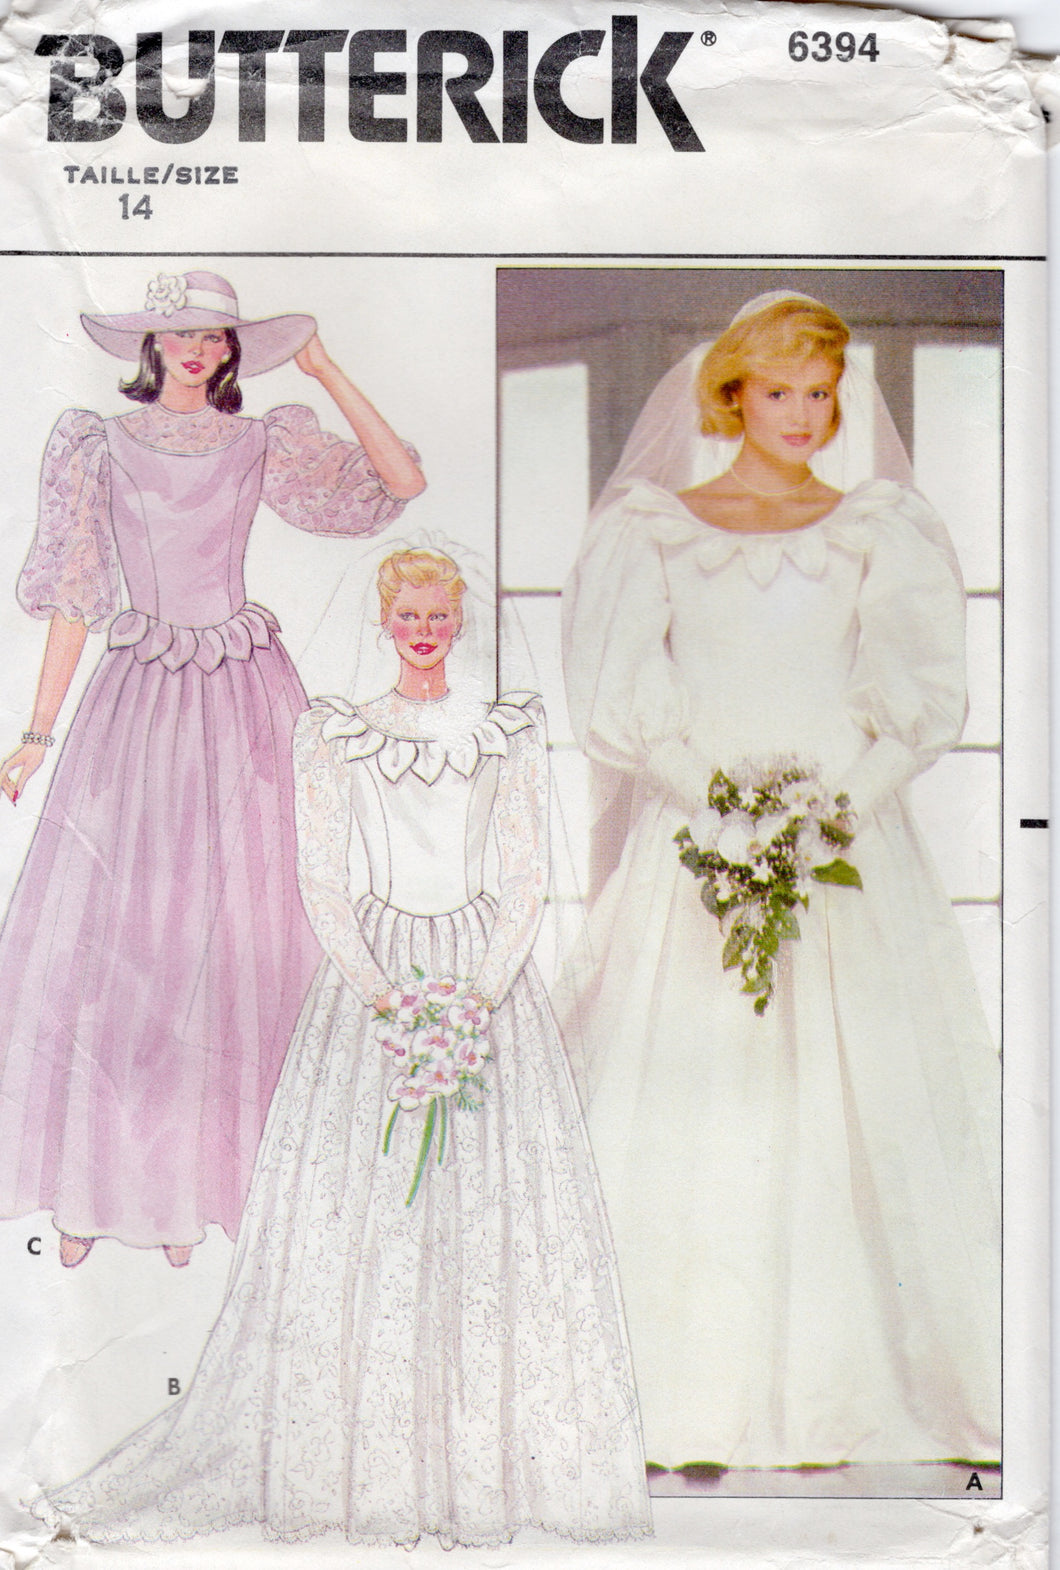 1980's Butterick Wedding Dress Pattern, Petal Neckline and Leg of Mutton Sleeves - Bust 36